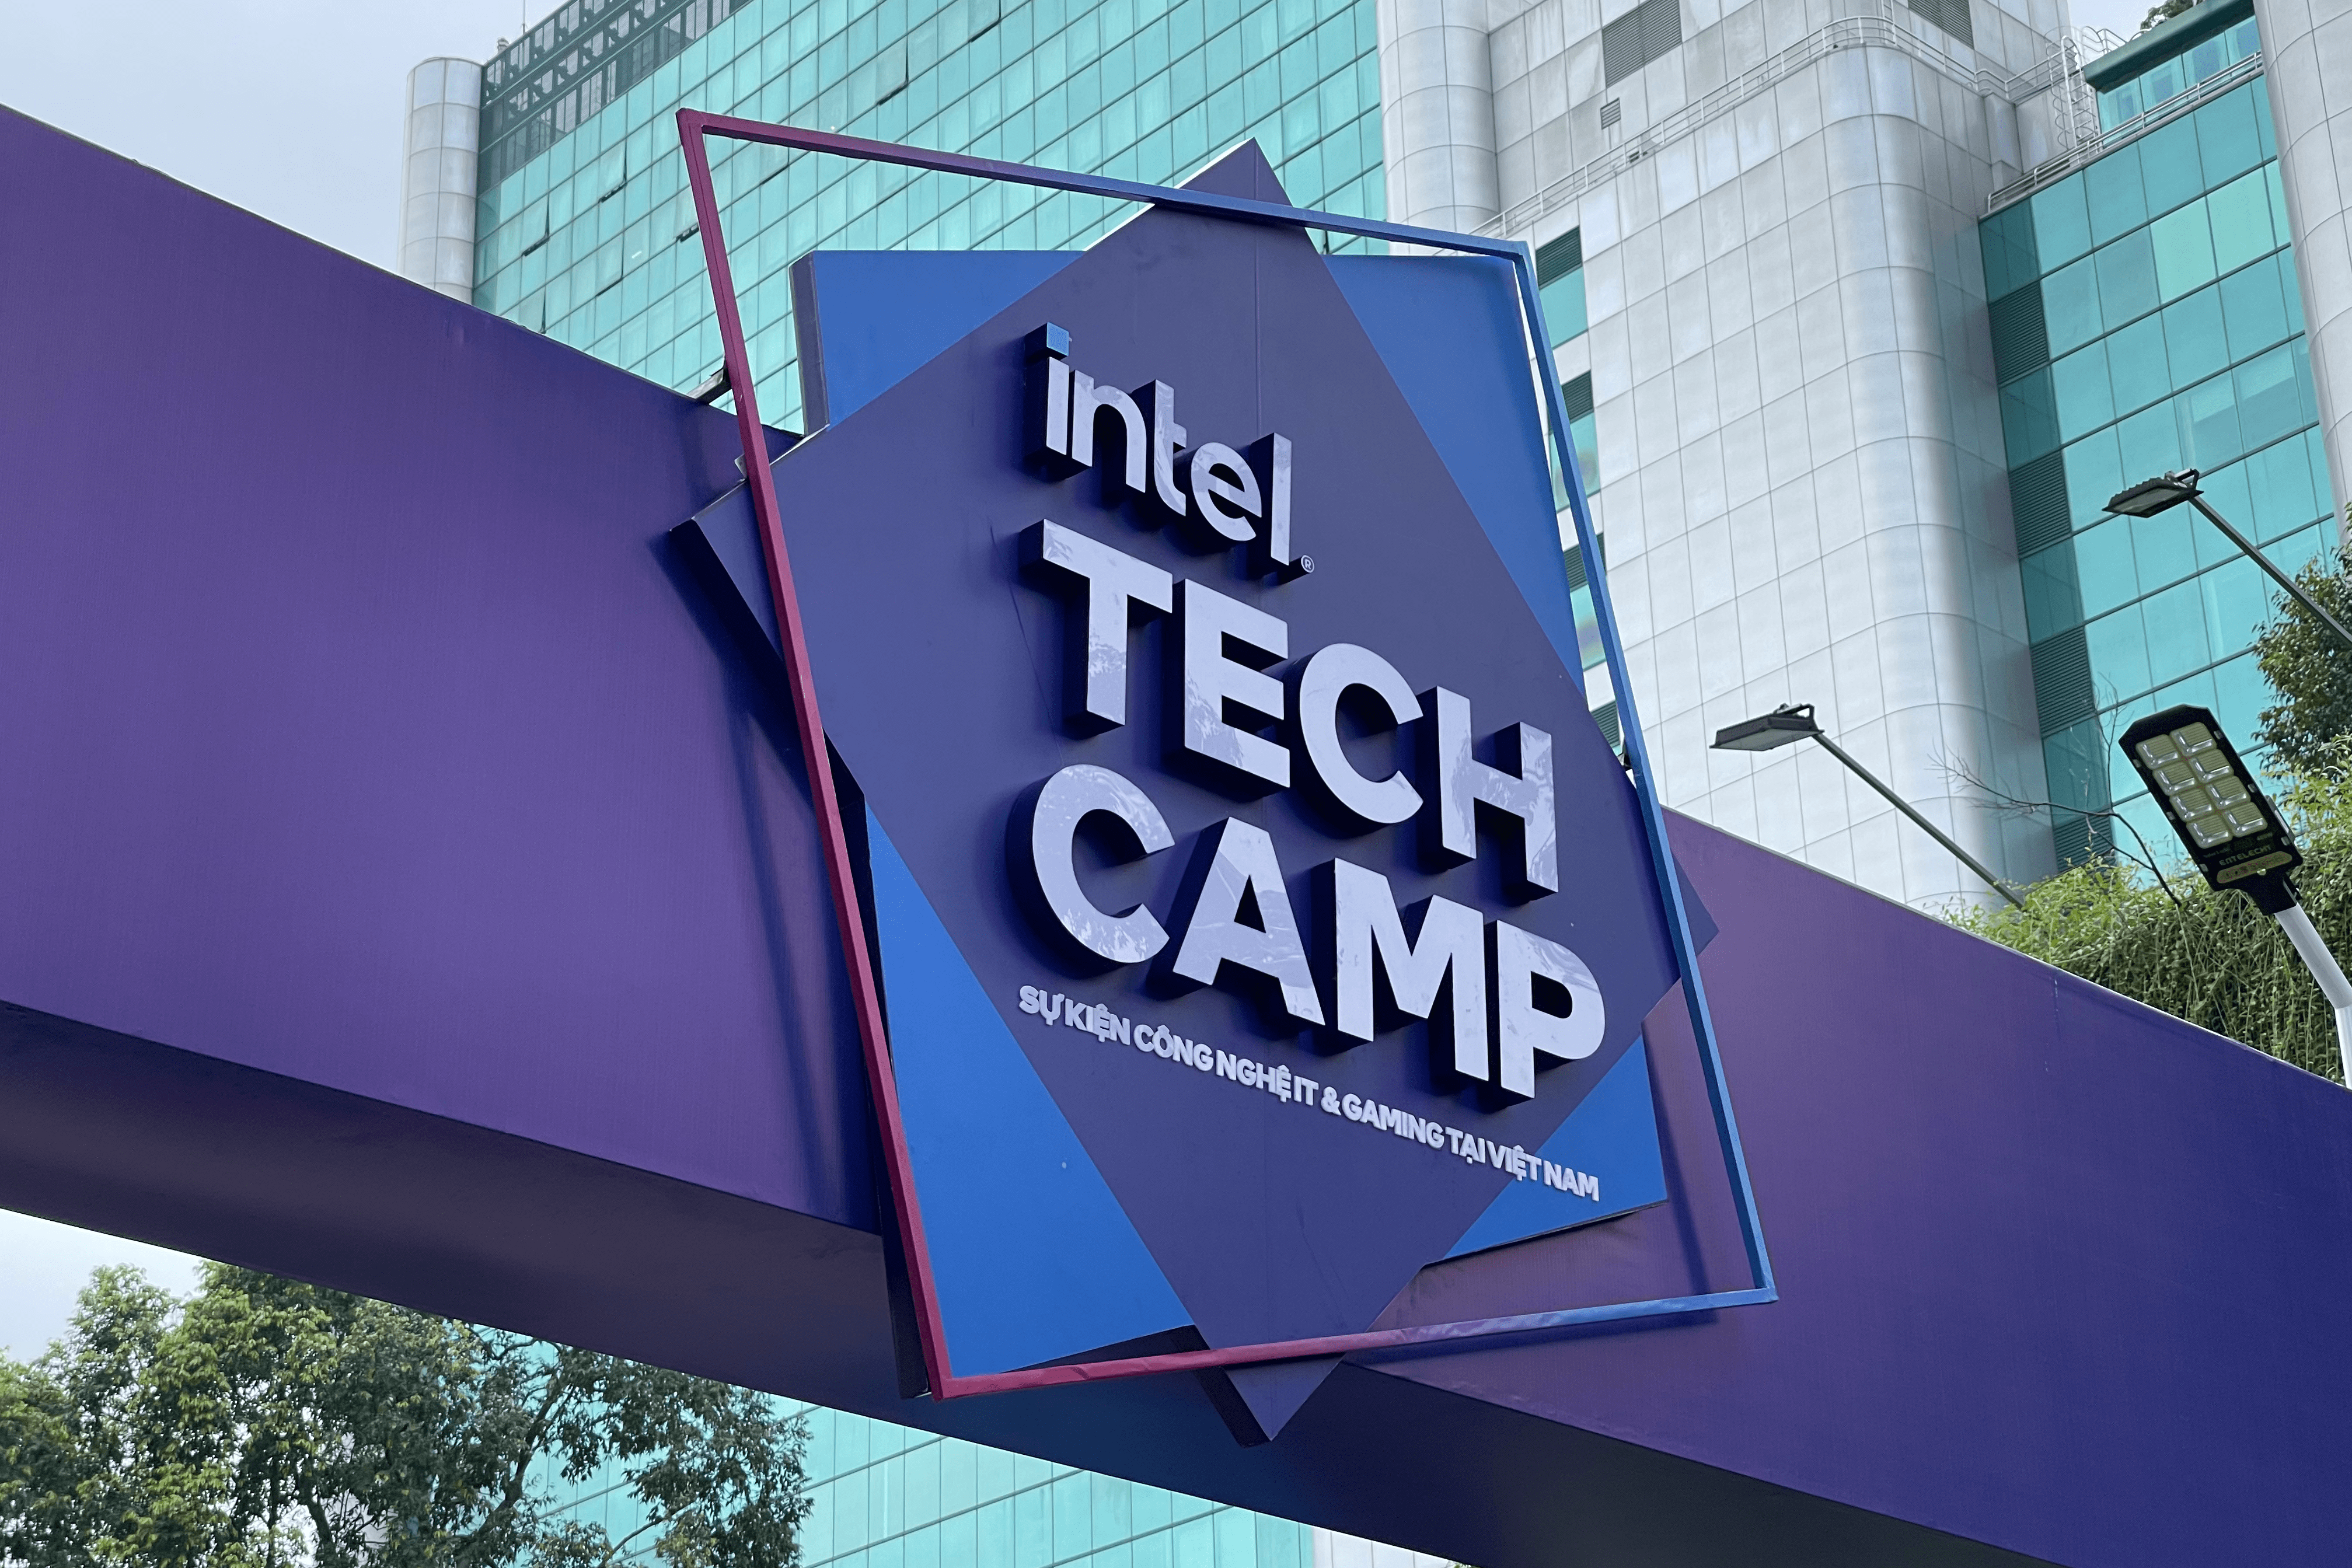 [PR] Intel chính thức khai mạc sự kiện công nghệ INTEL TECH CAMP đầu tiên tại Việt Nam - Image 5